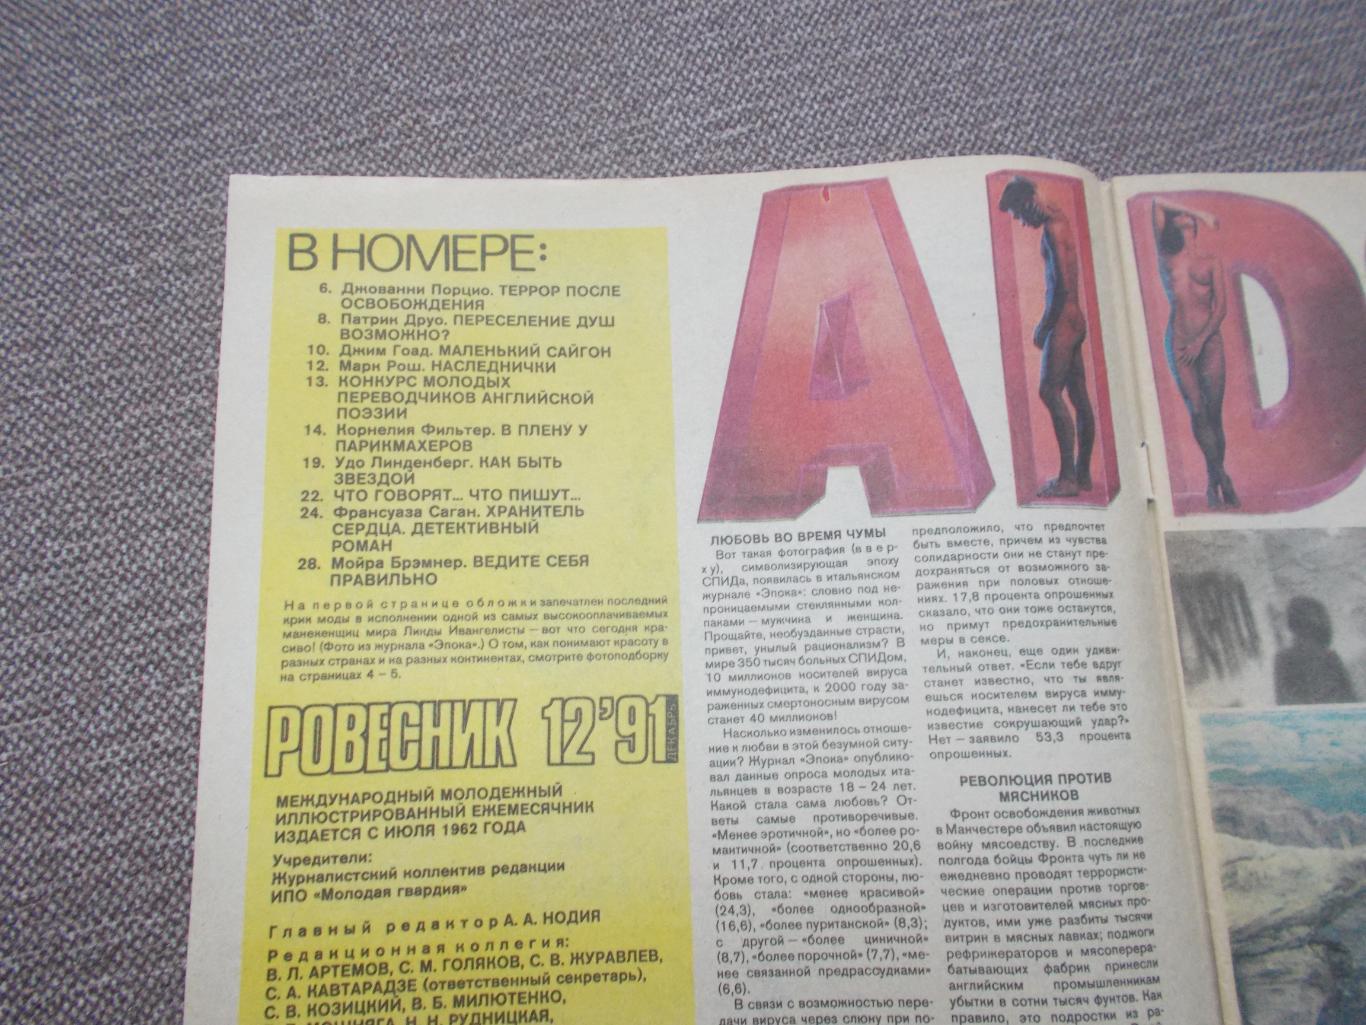 Журнал СССР :Ровесник№ 12 (декабрь) 1991 г. (Молодежный музыкальный журнал 2